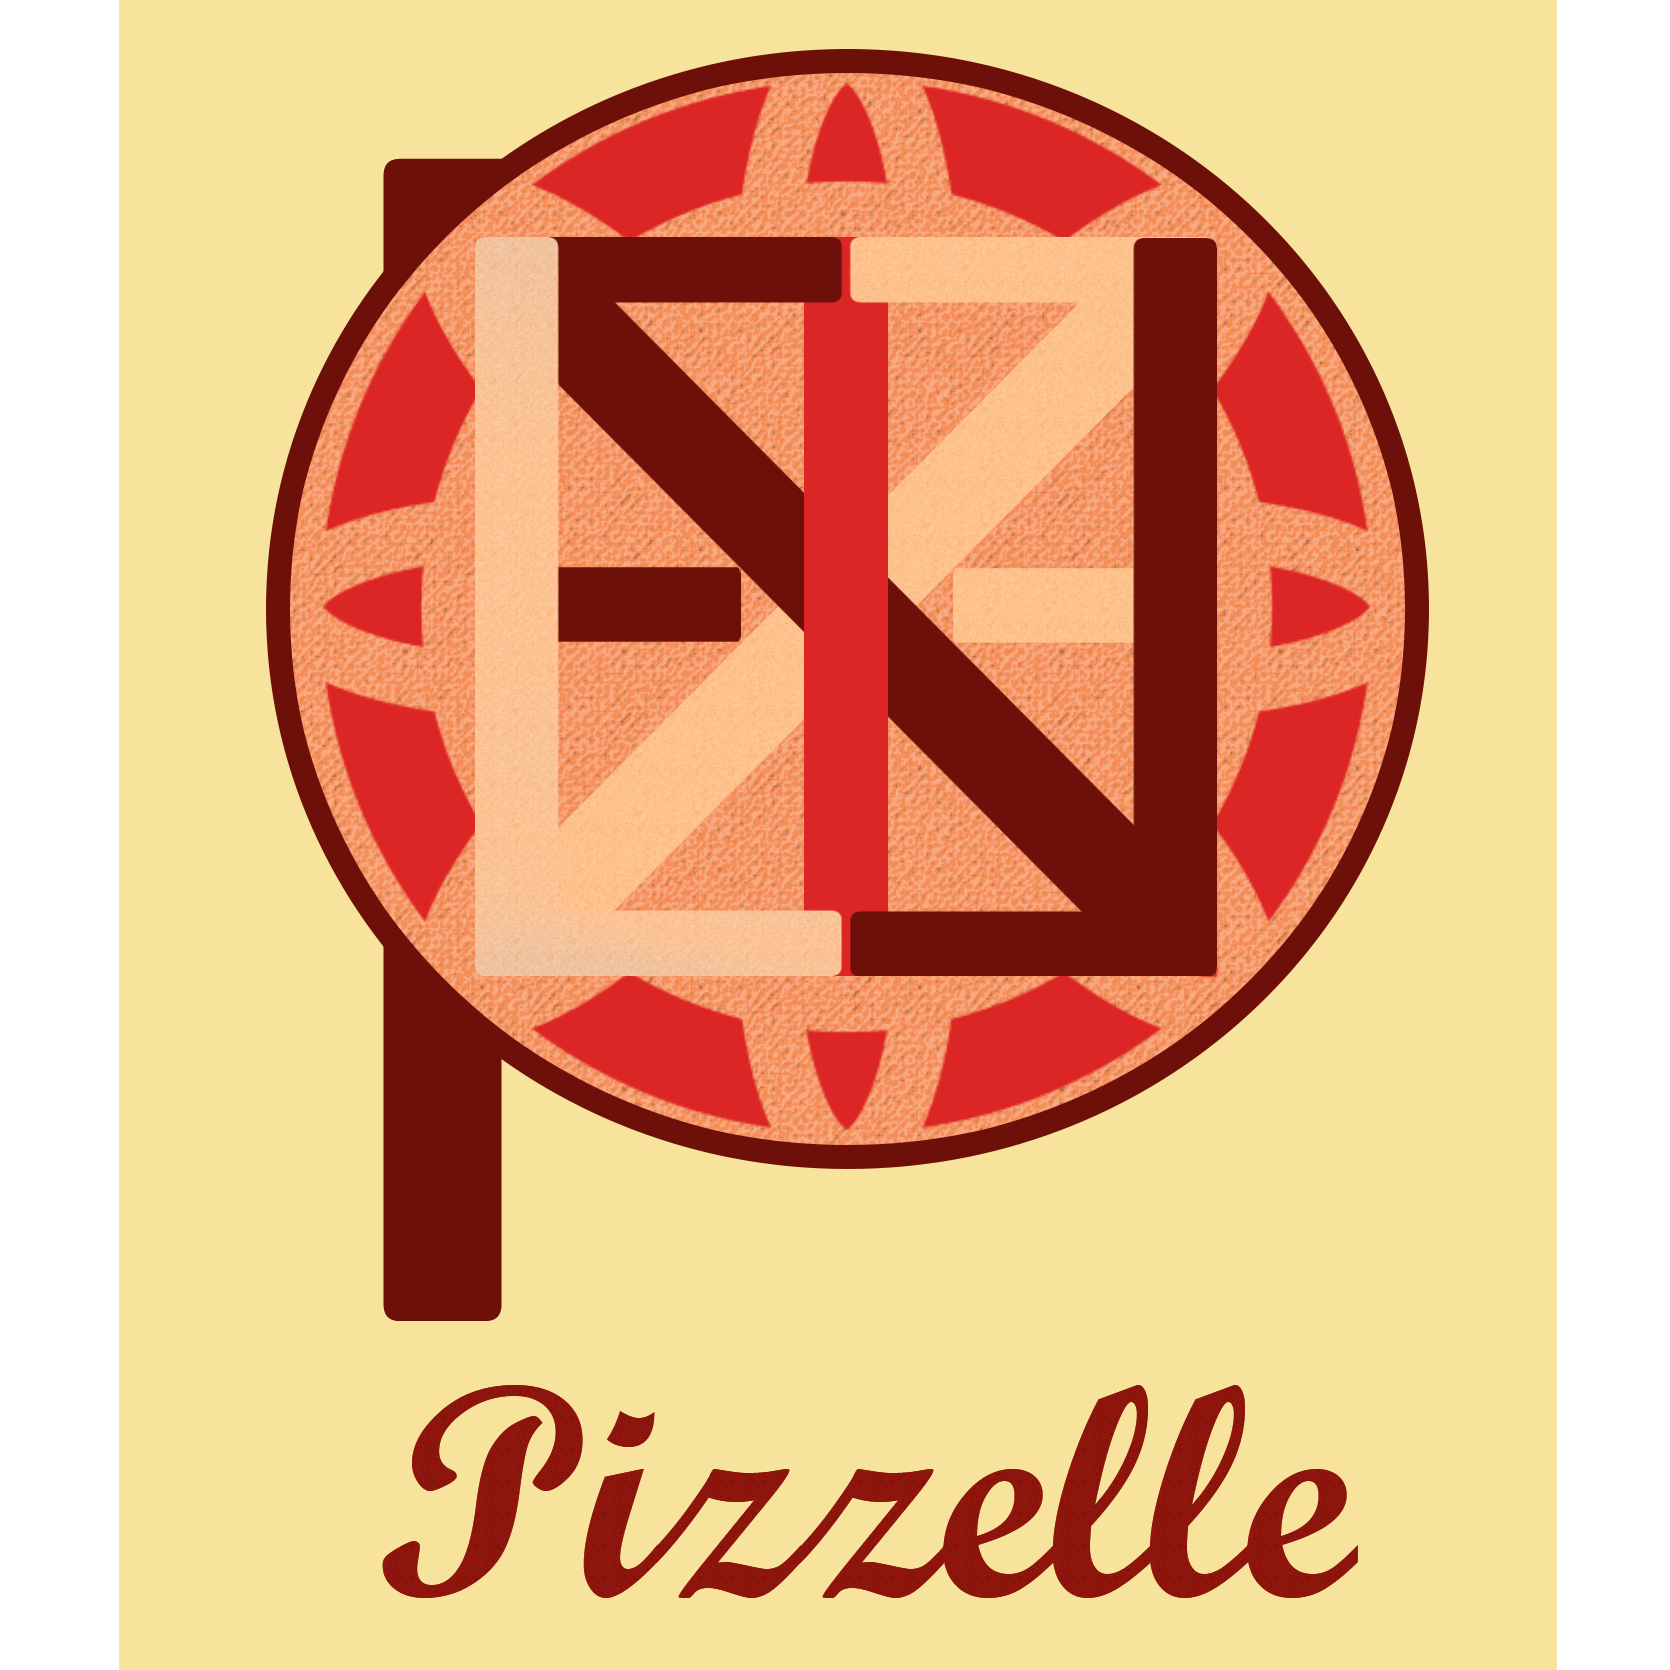 لوگوی قنادی و شیرینی فروشی Pizzelle